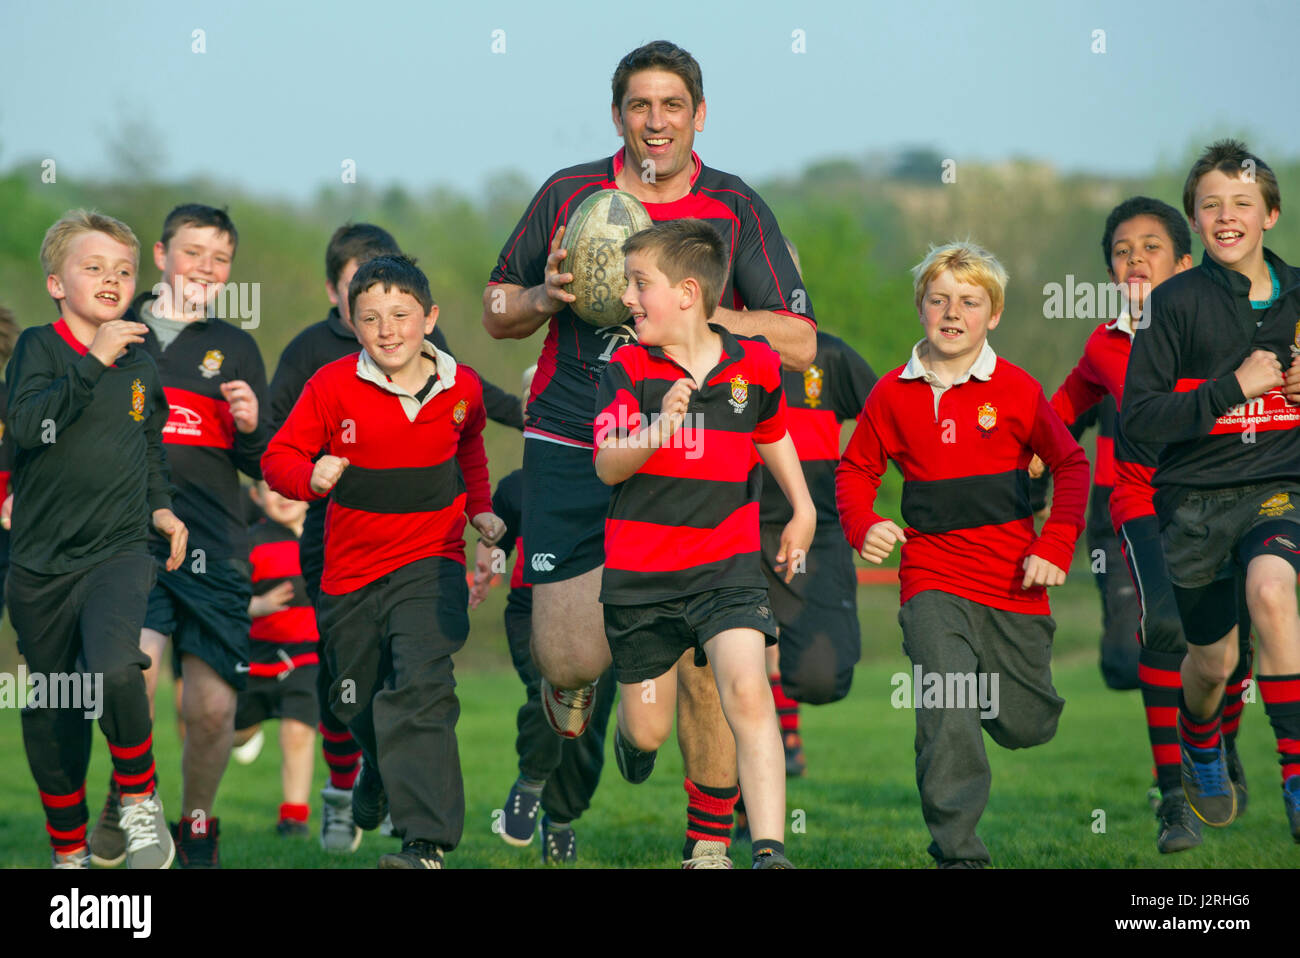 Avonmouth Rugby Football Club, Bristol con Nick de Venn: enseñar a los más jóvenes. Foto de stock